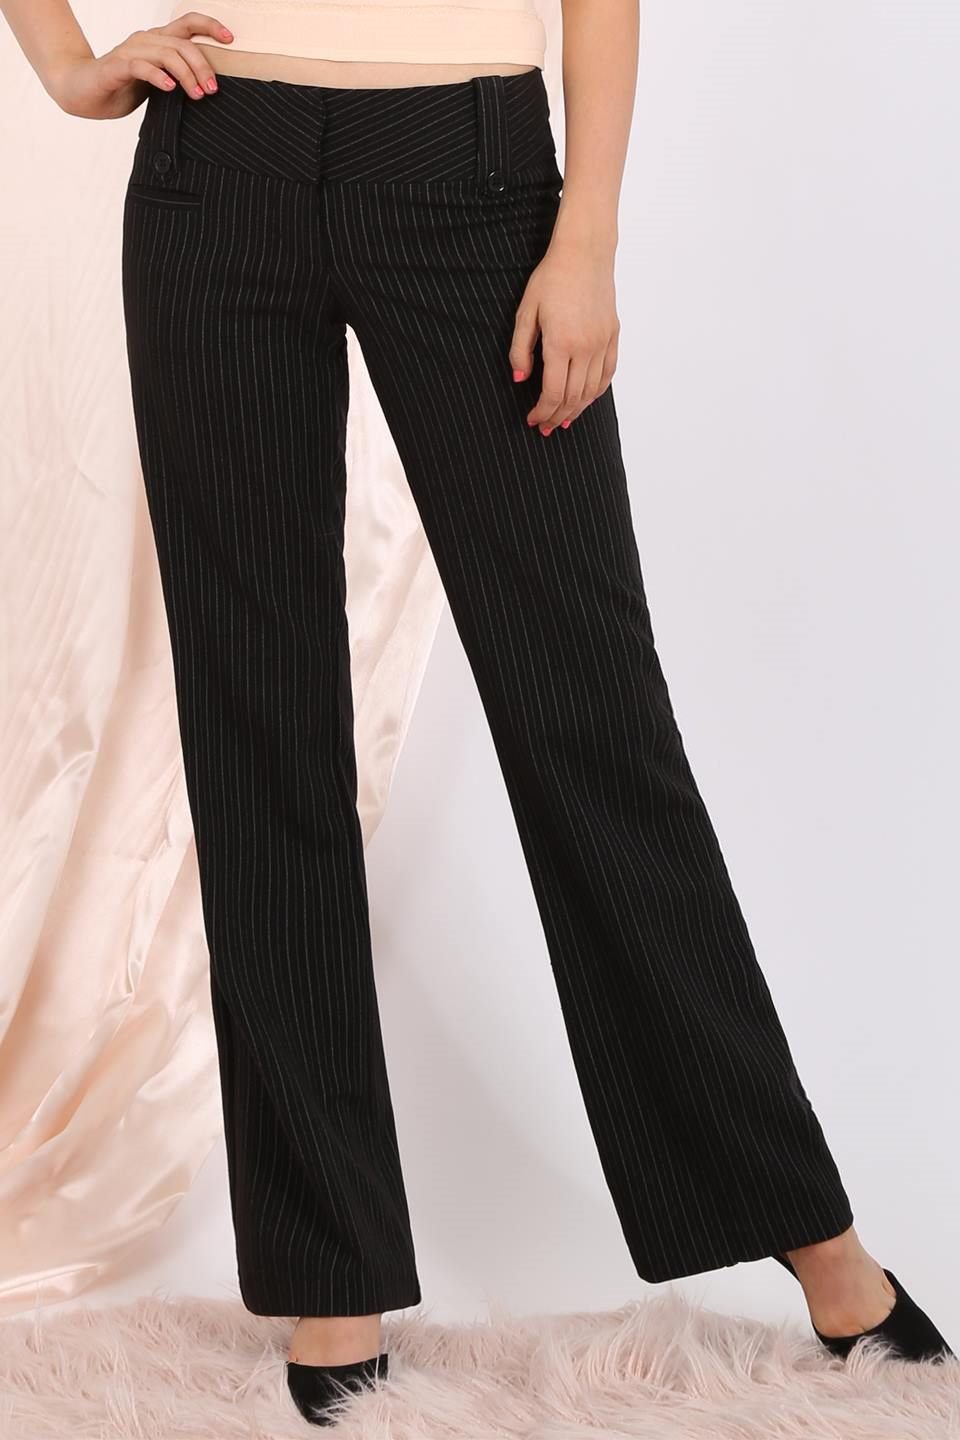 MISS PINKI Dakota tailored pinstripe work pants in black